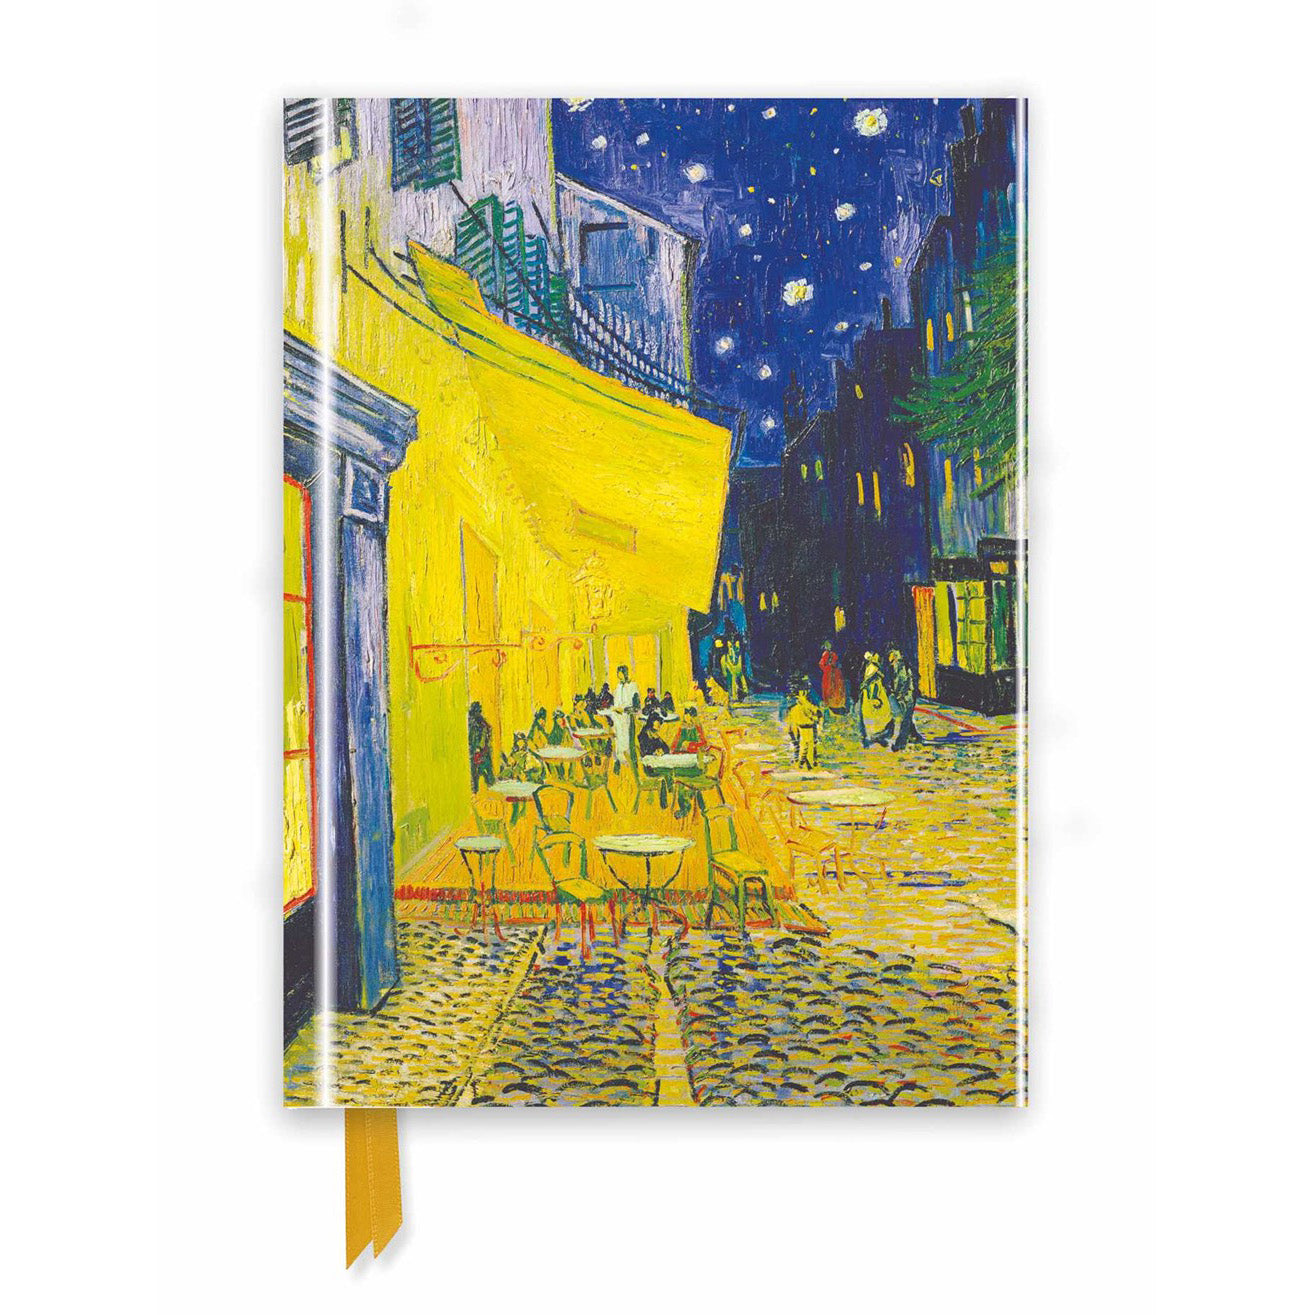 Vincent van Gogh "Café Terrace" Foiled Journal